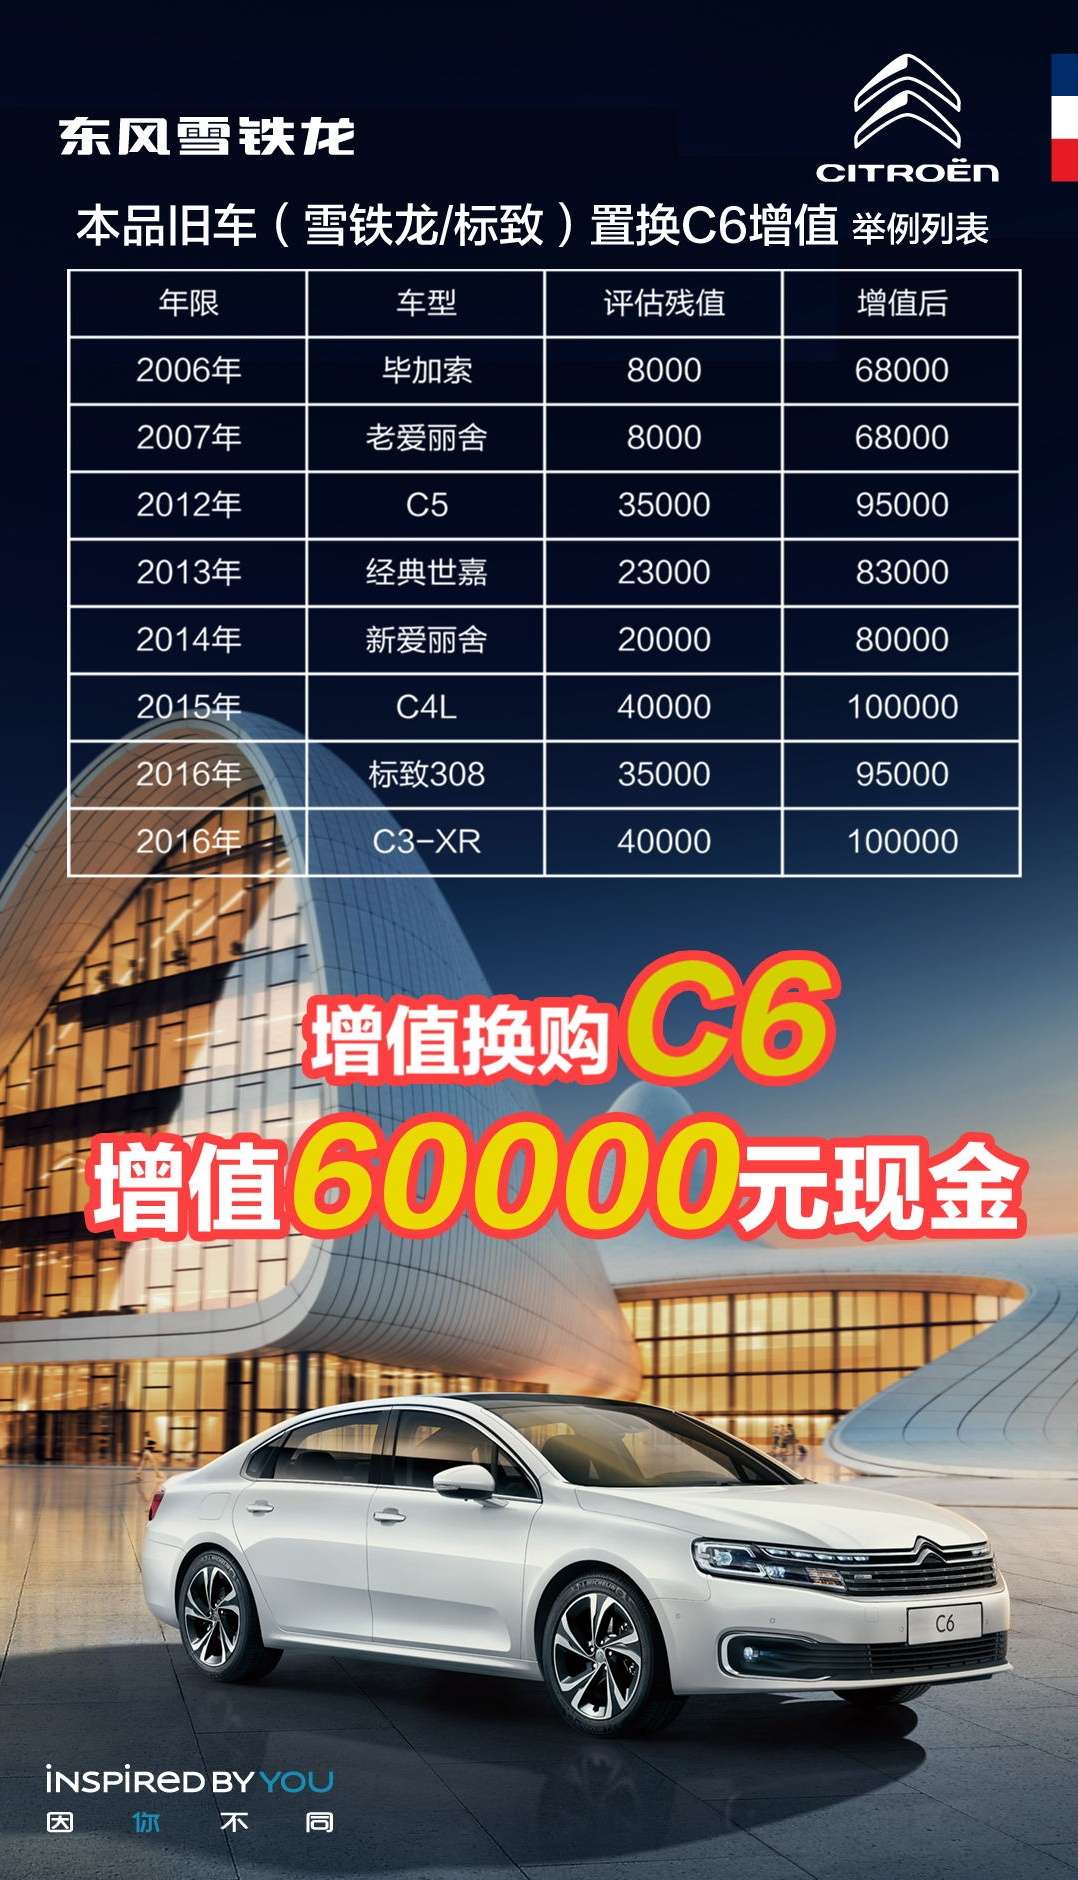 购雪铁龙C6 享至高60000元增值换购补贴